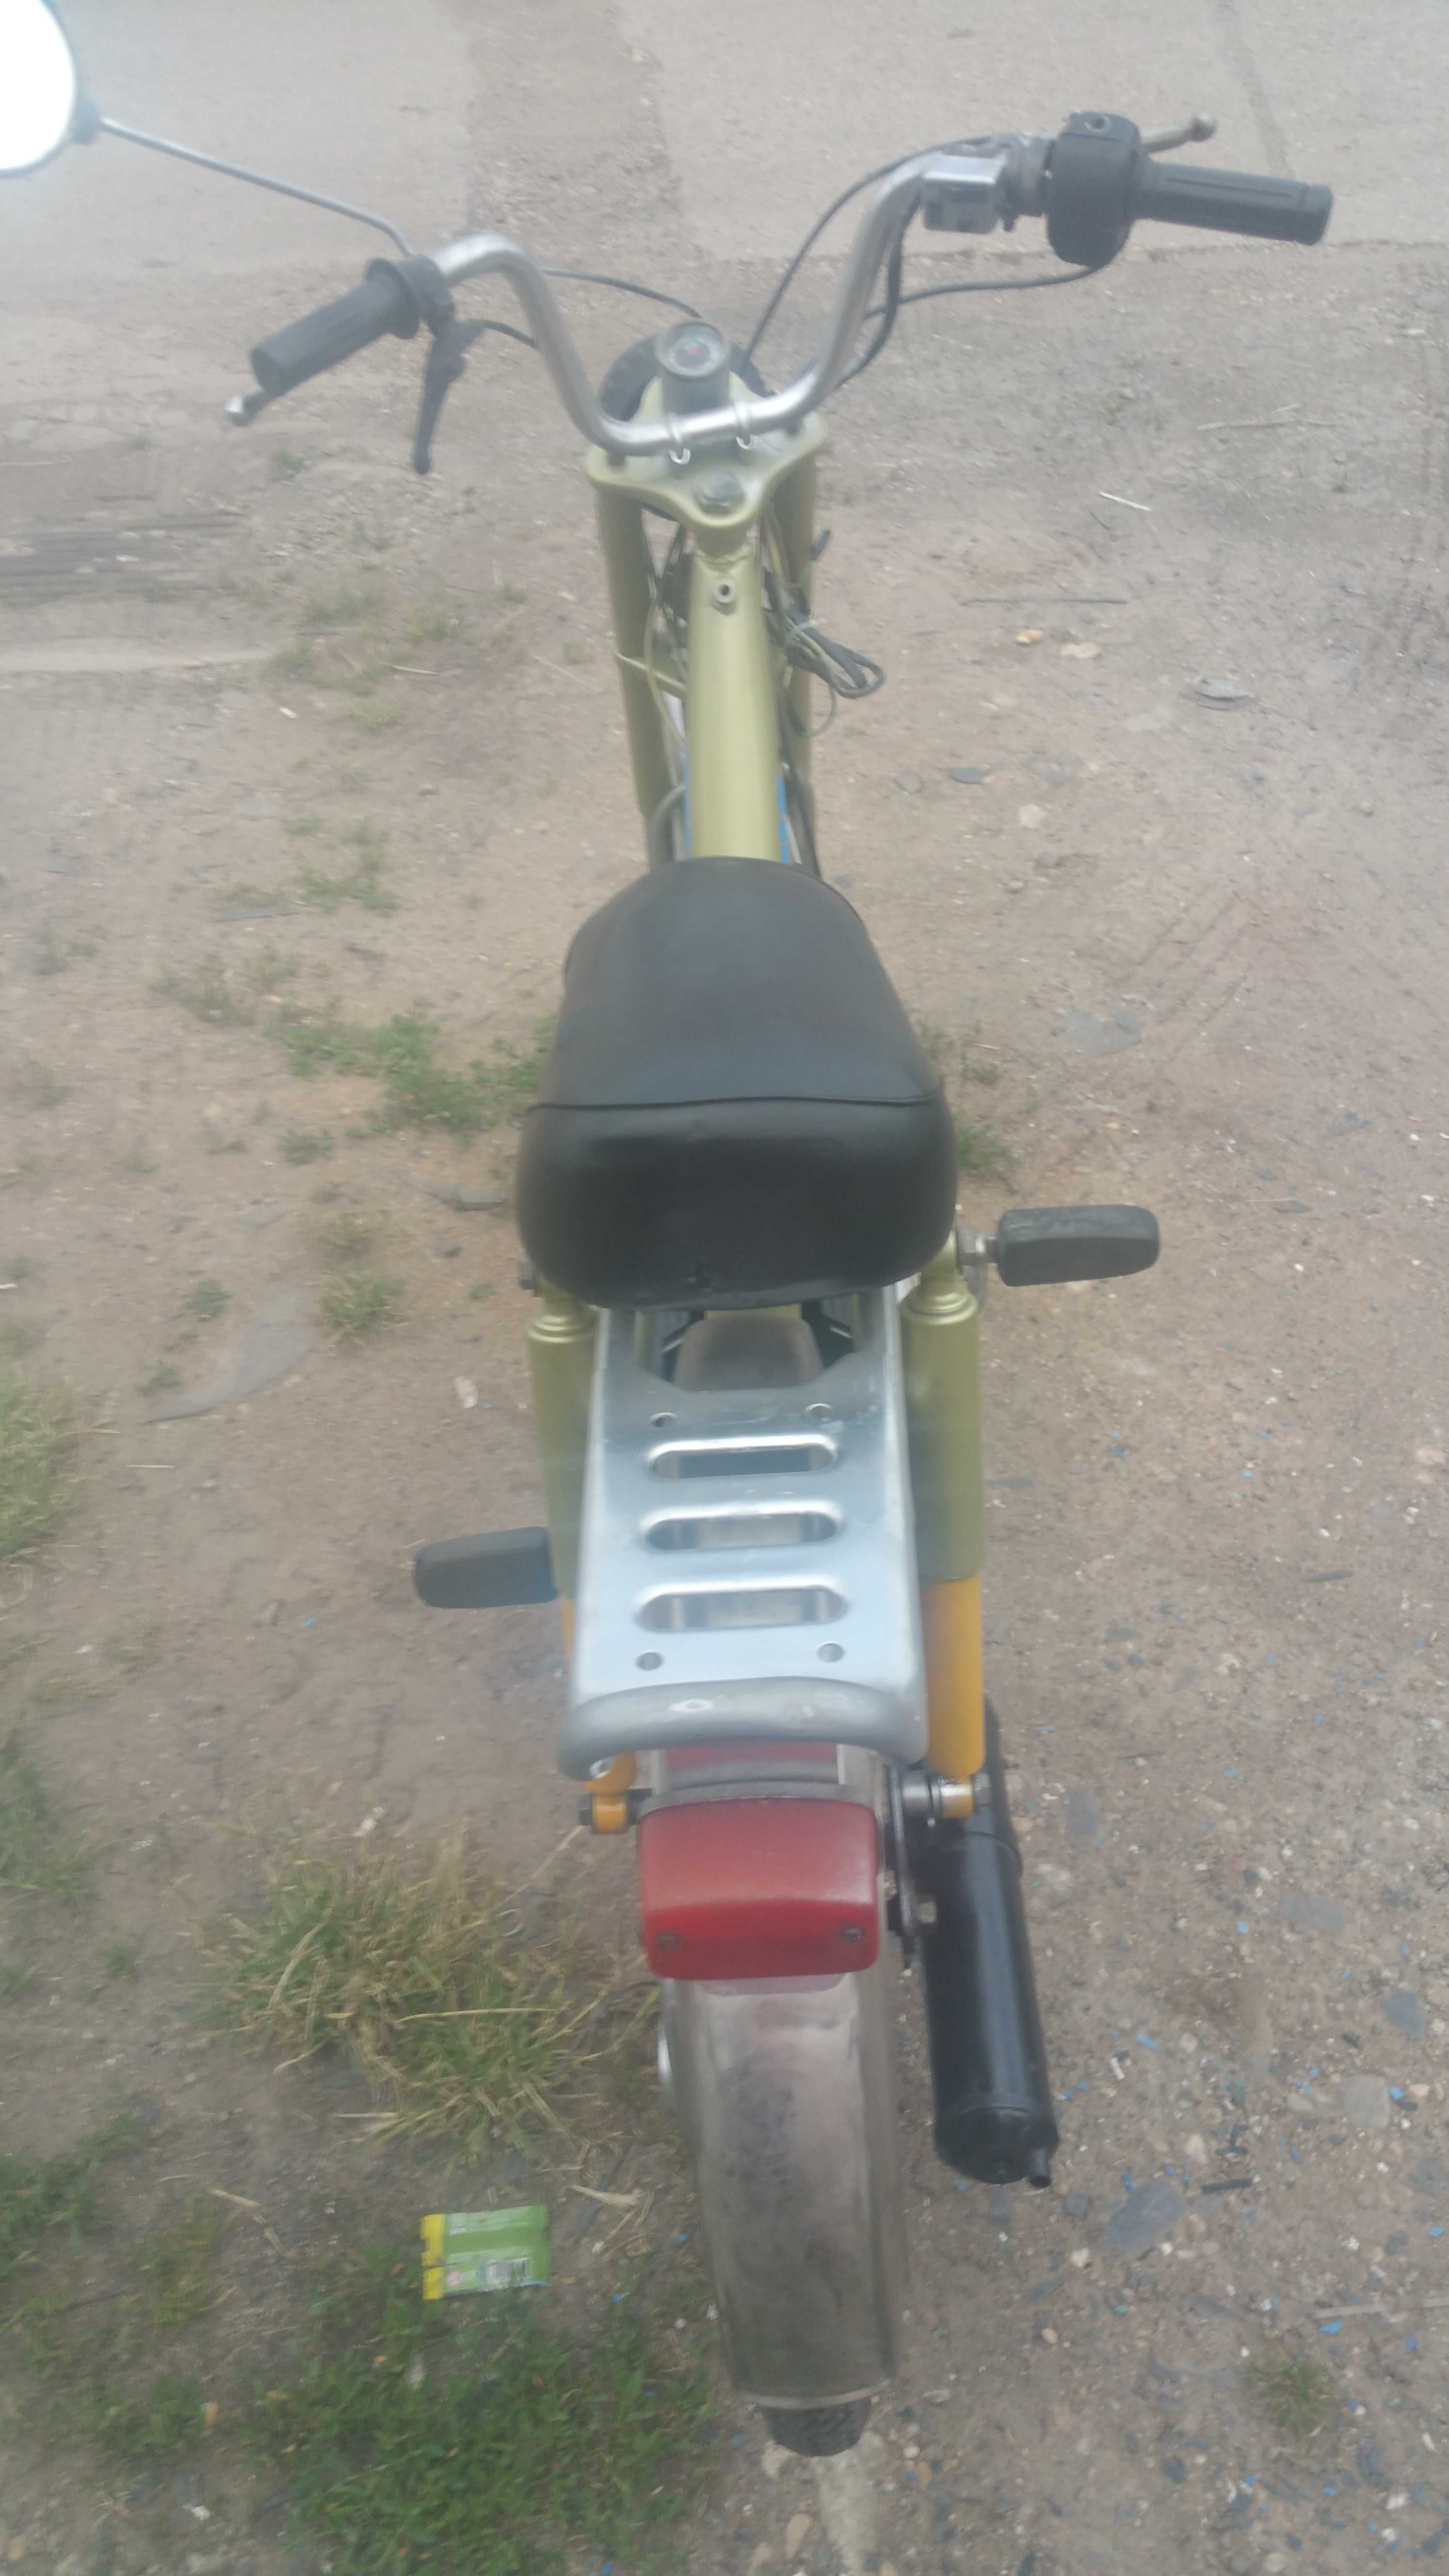 Moped Suzuki Eko TVS